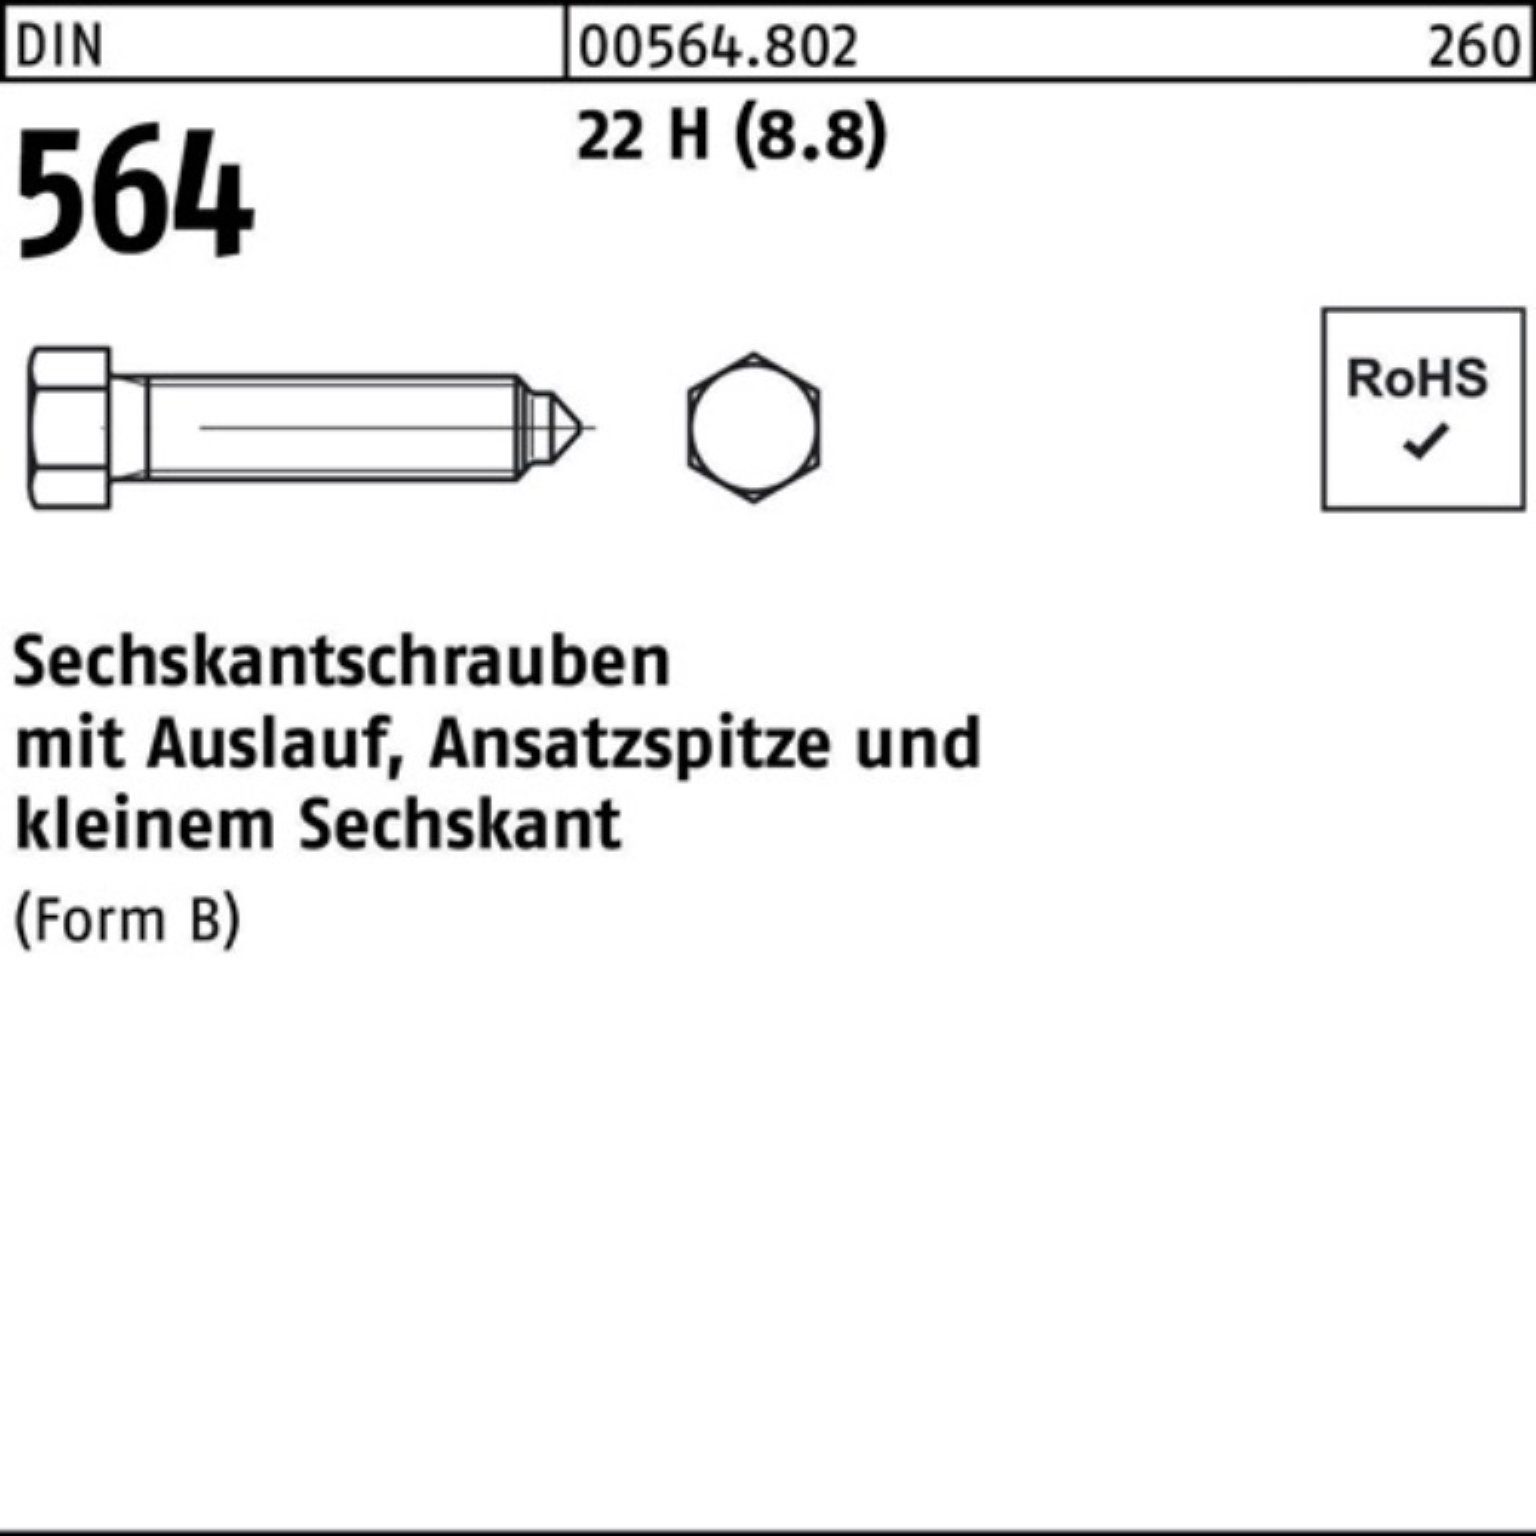 Reyher Sechskantschraube 100er Pack Sechskantschraube DIN 564 Ansatzspitze/Auslauf BM 24x 100 2